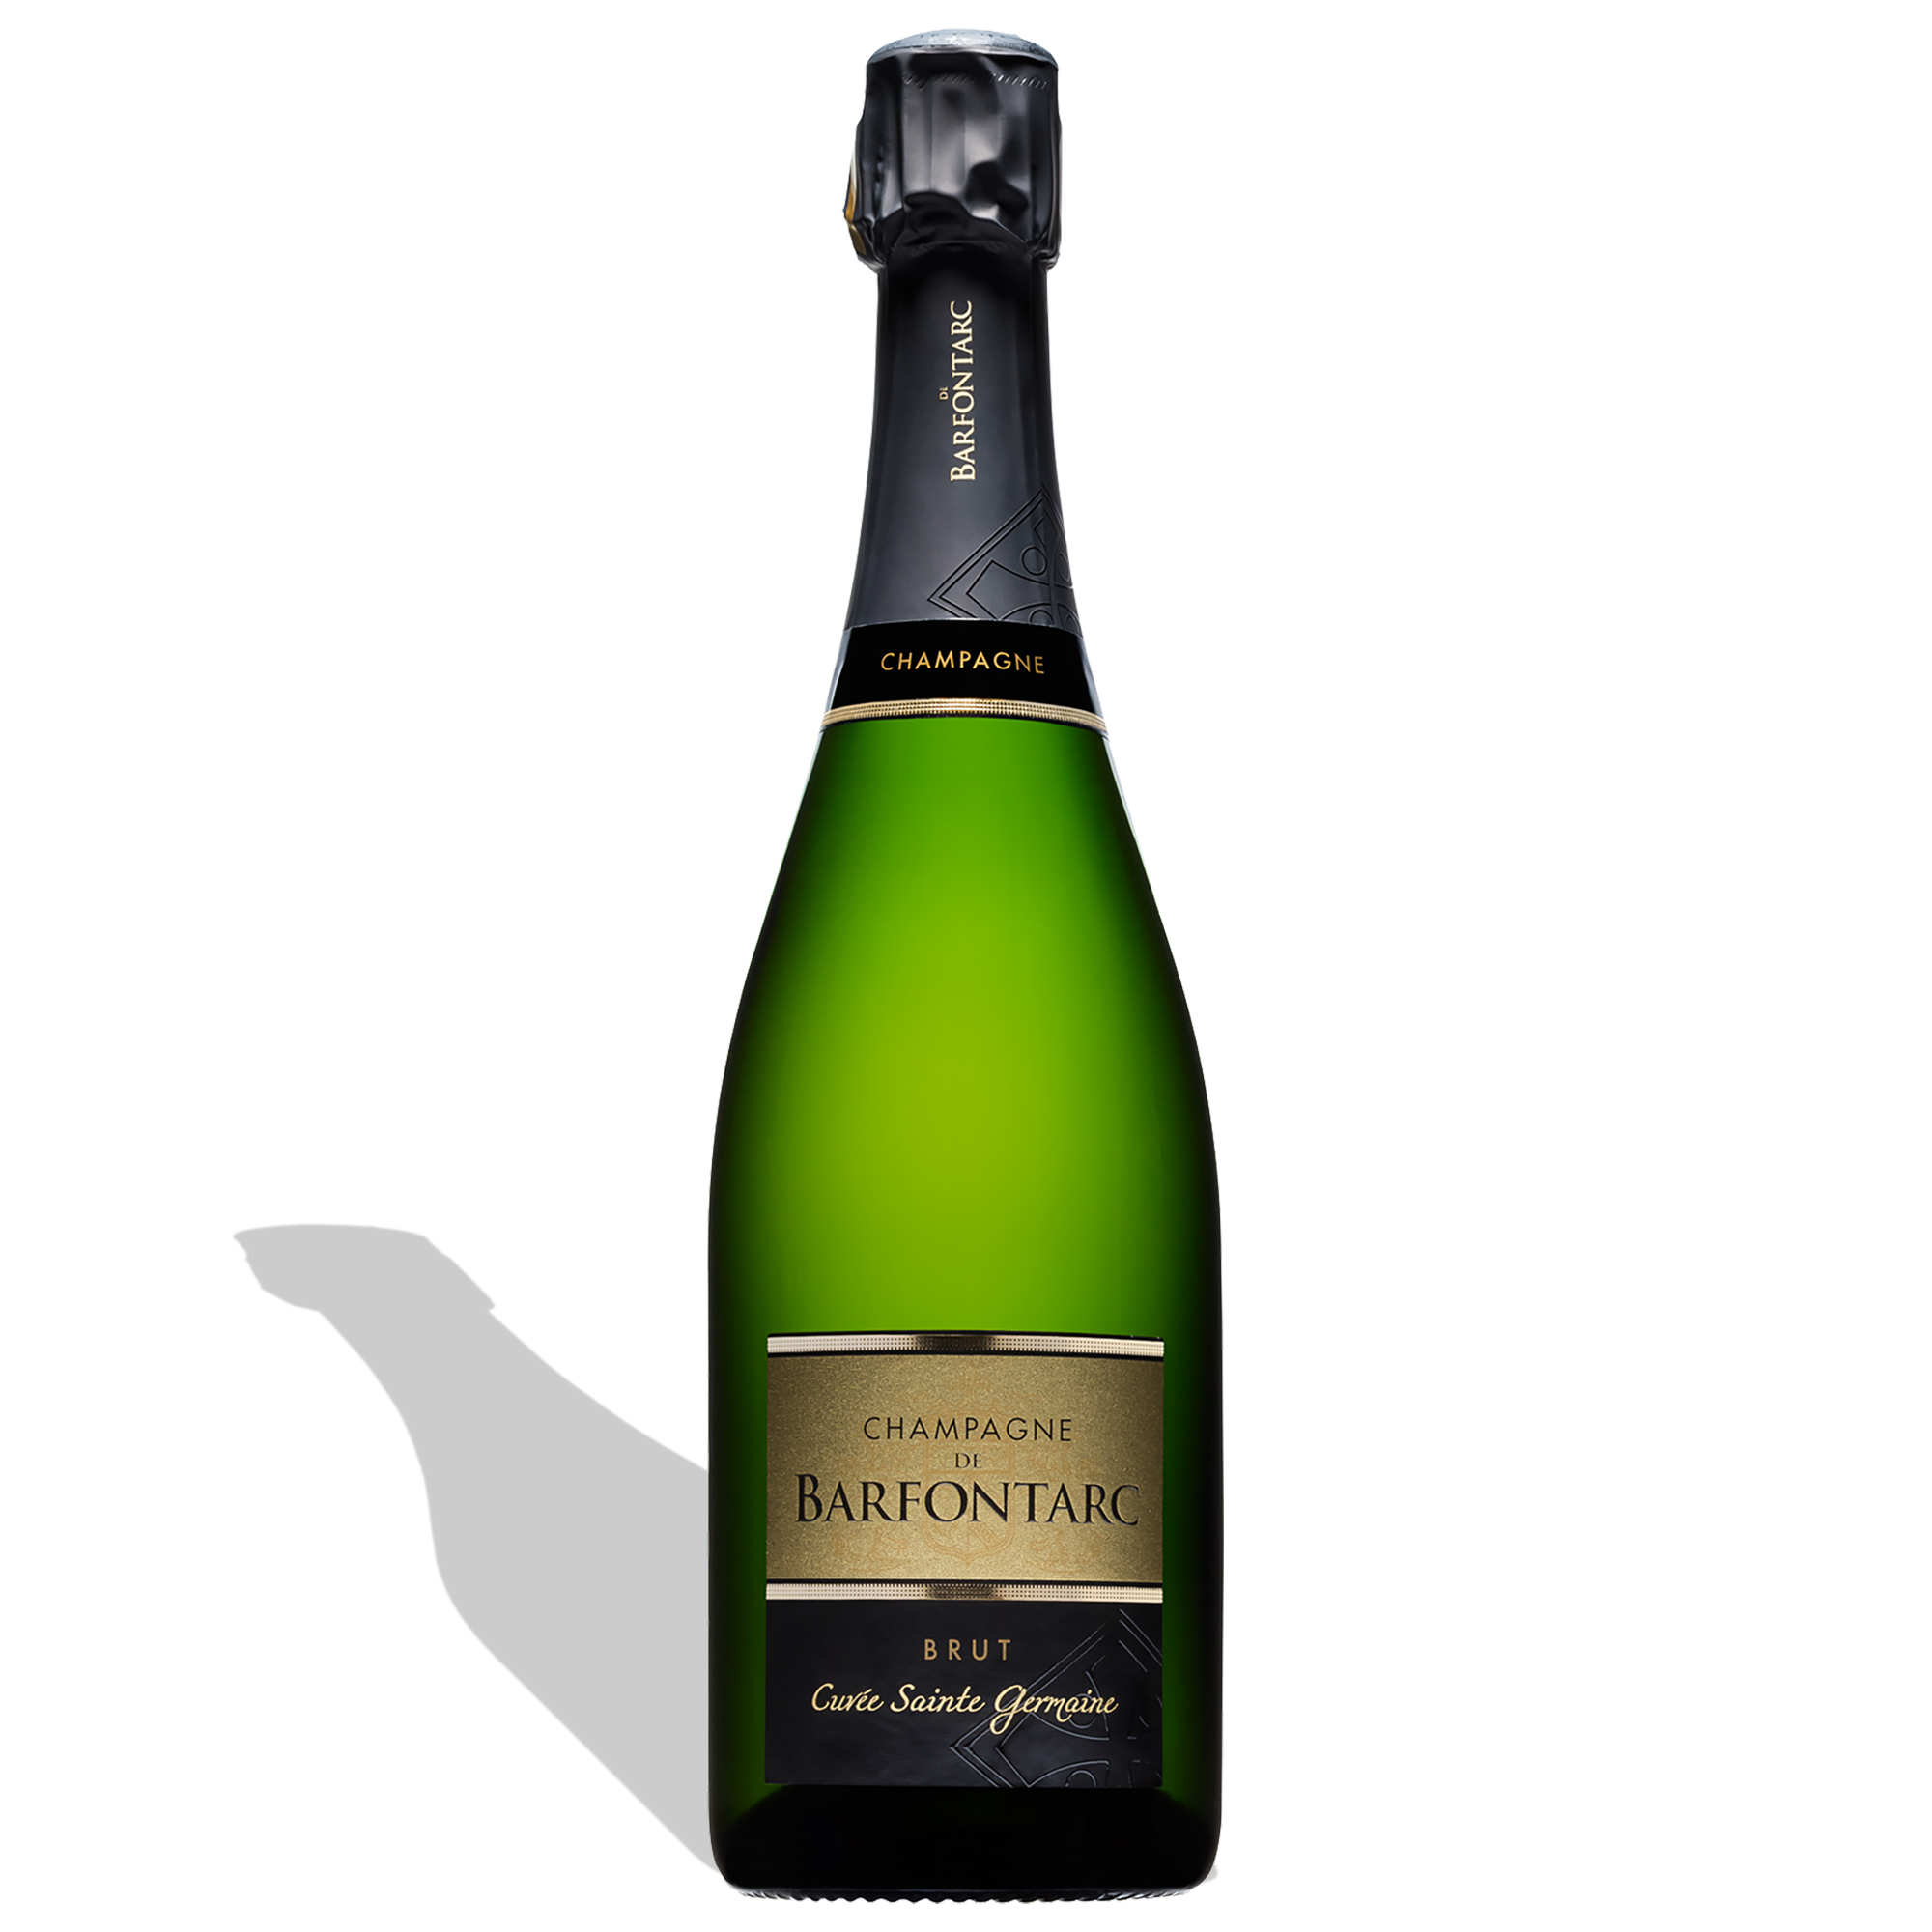 Champagne de Barfontarc Cuvée Sainte Germaine Brut 